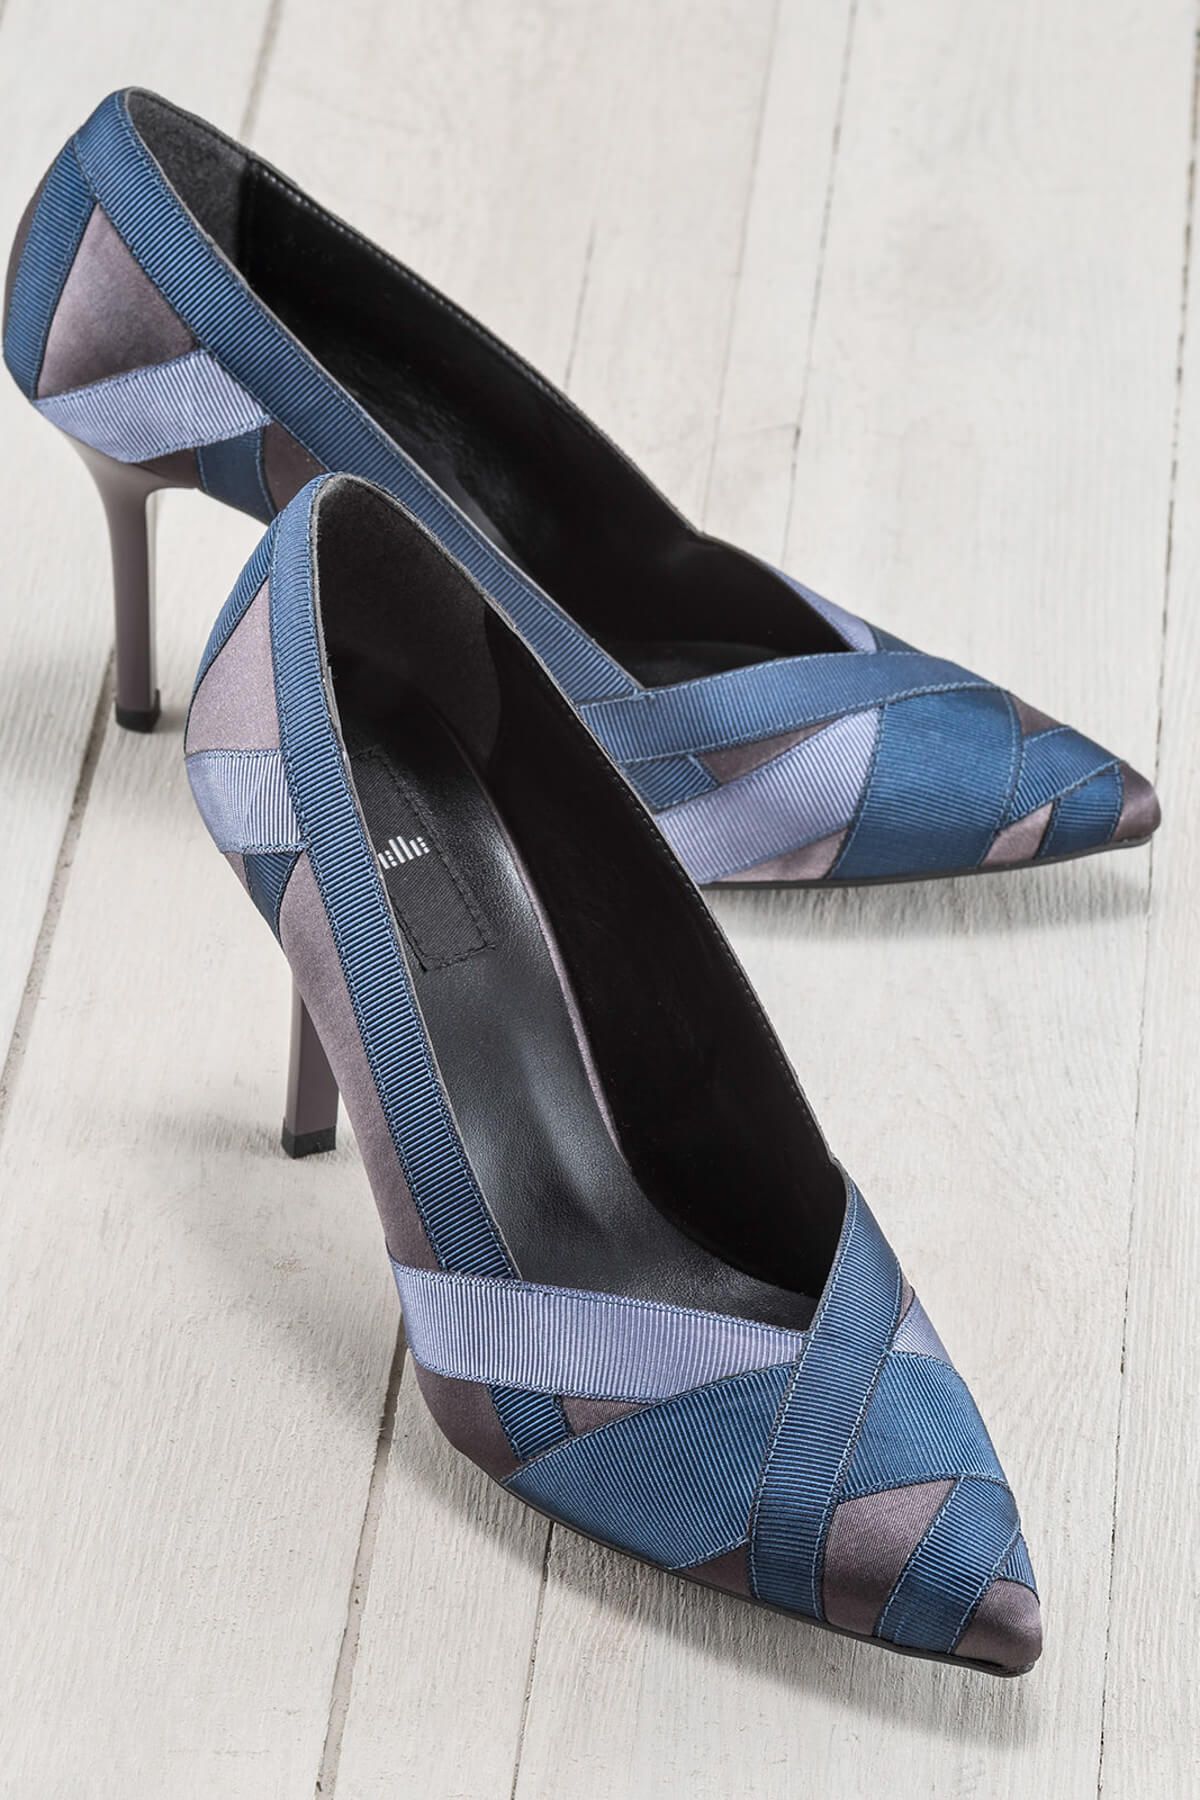 Elle ELISHA Füme Mavi Kadın Topuklu Ayakkabı